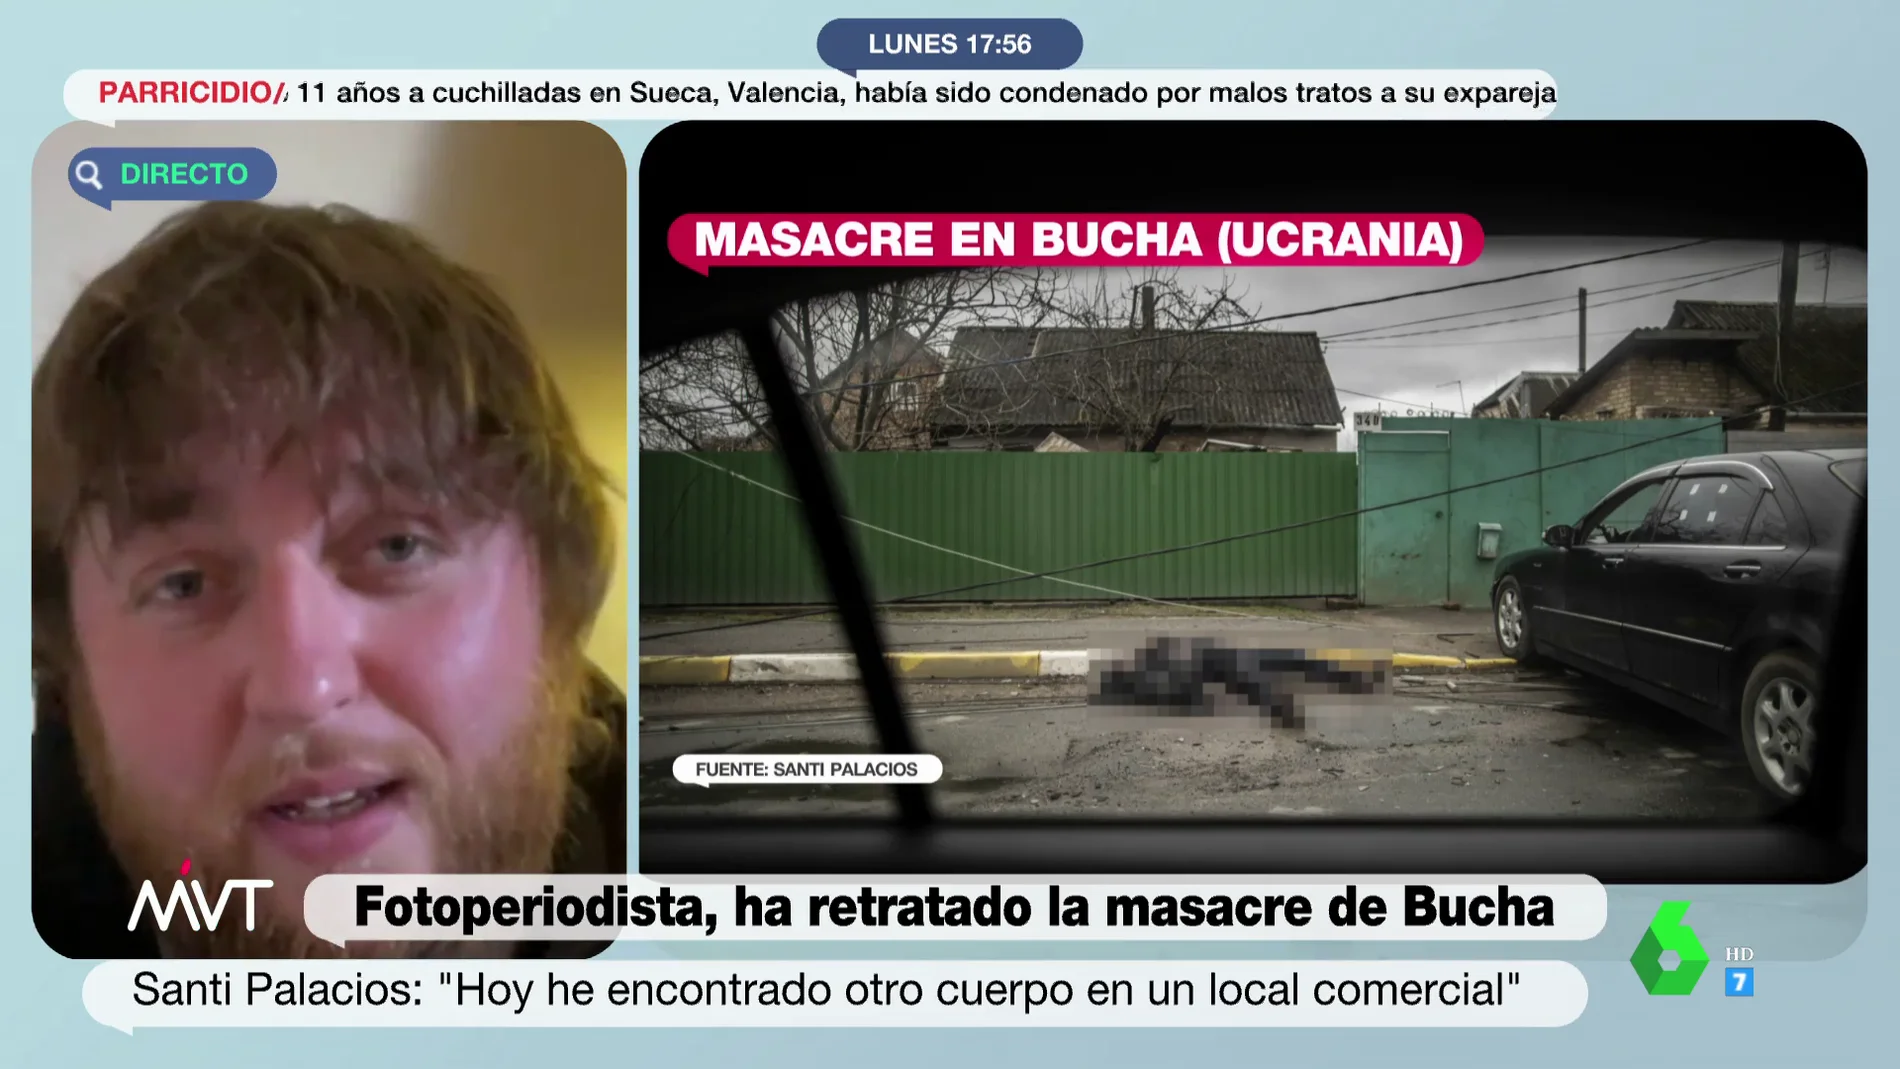 La respuesta del fotoperiodista de guerra Santi Palacios a quienes dudan de la masacre en Bucha